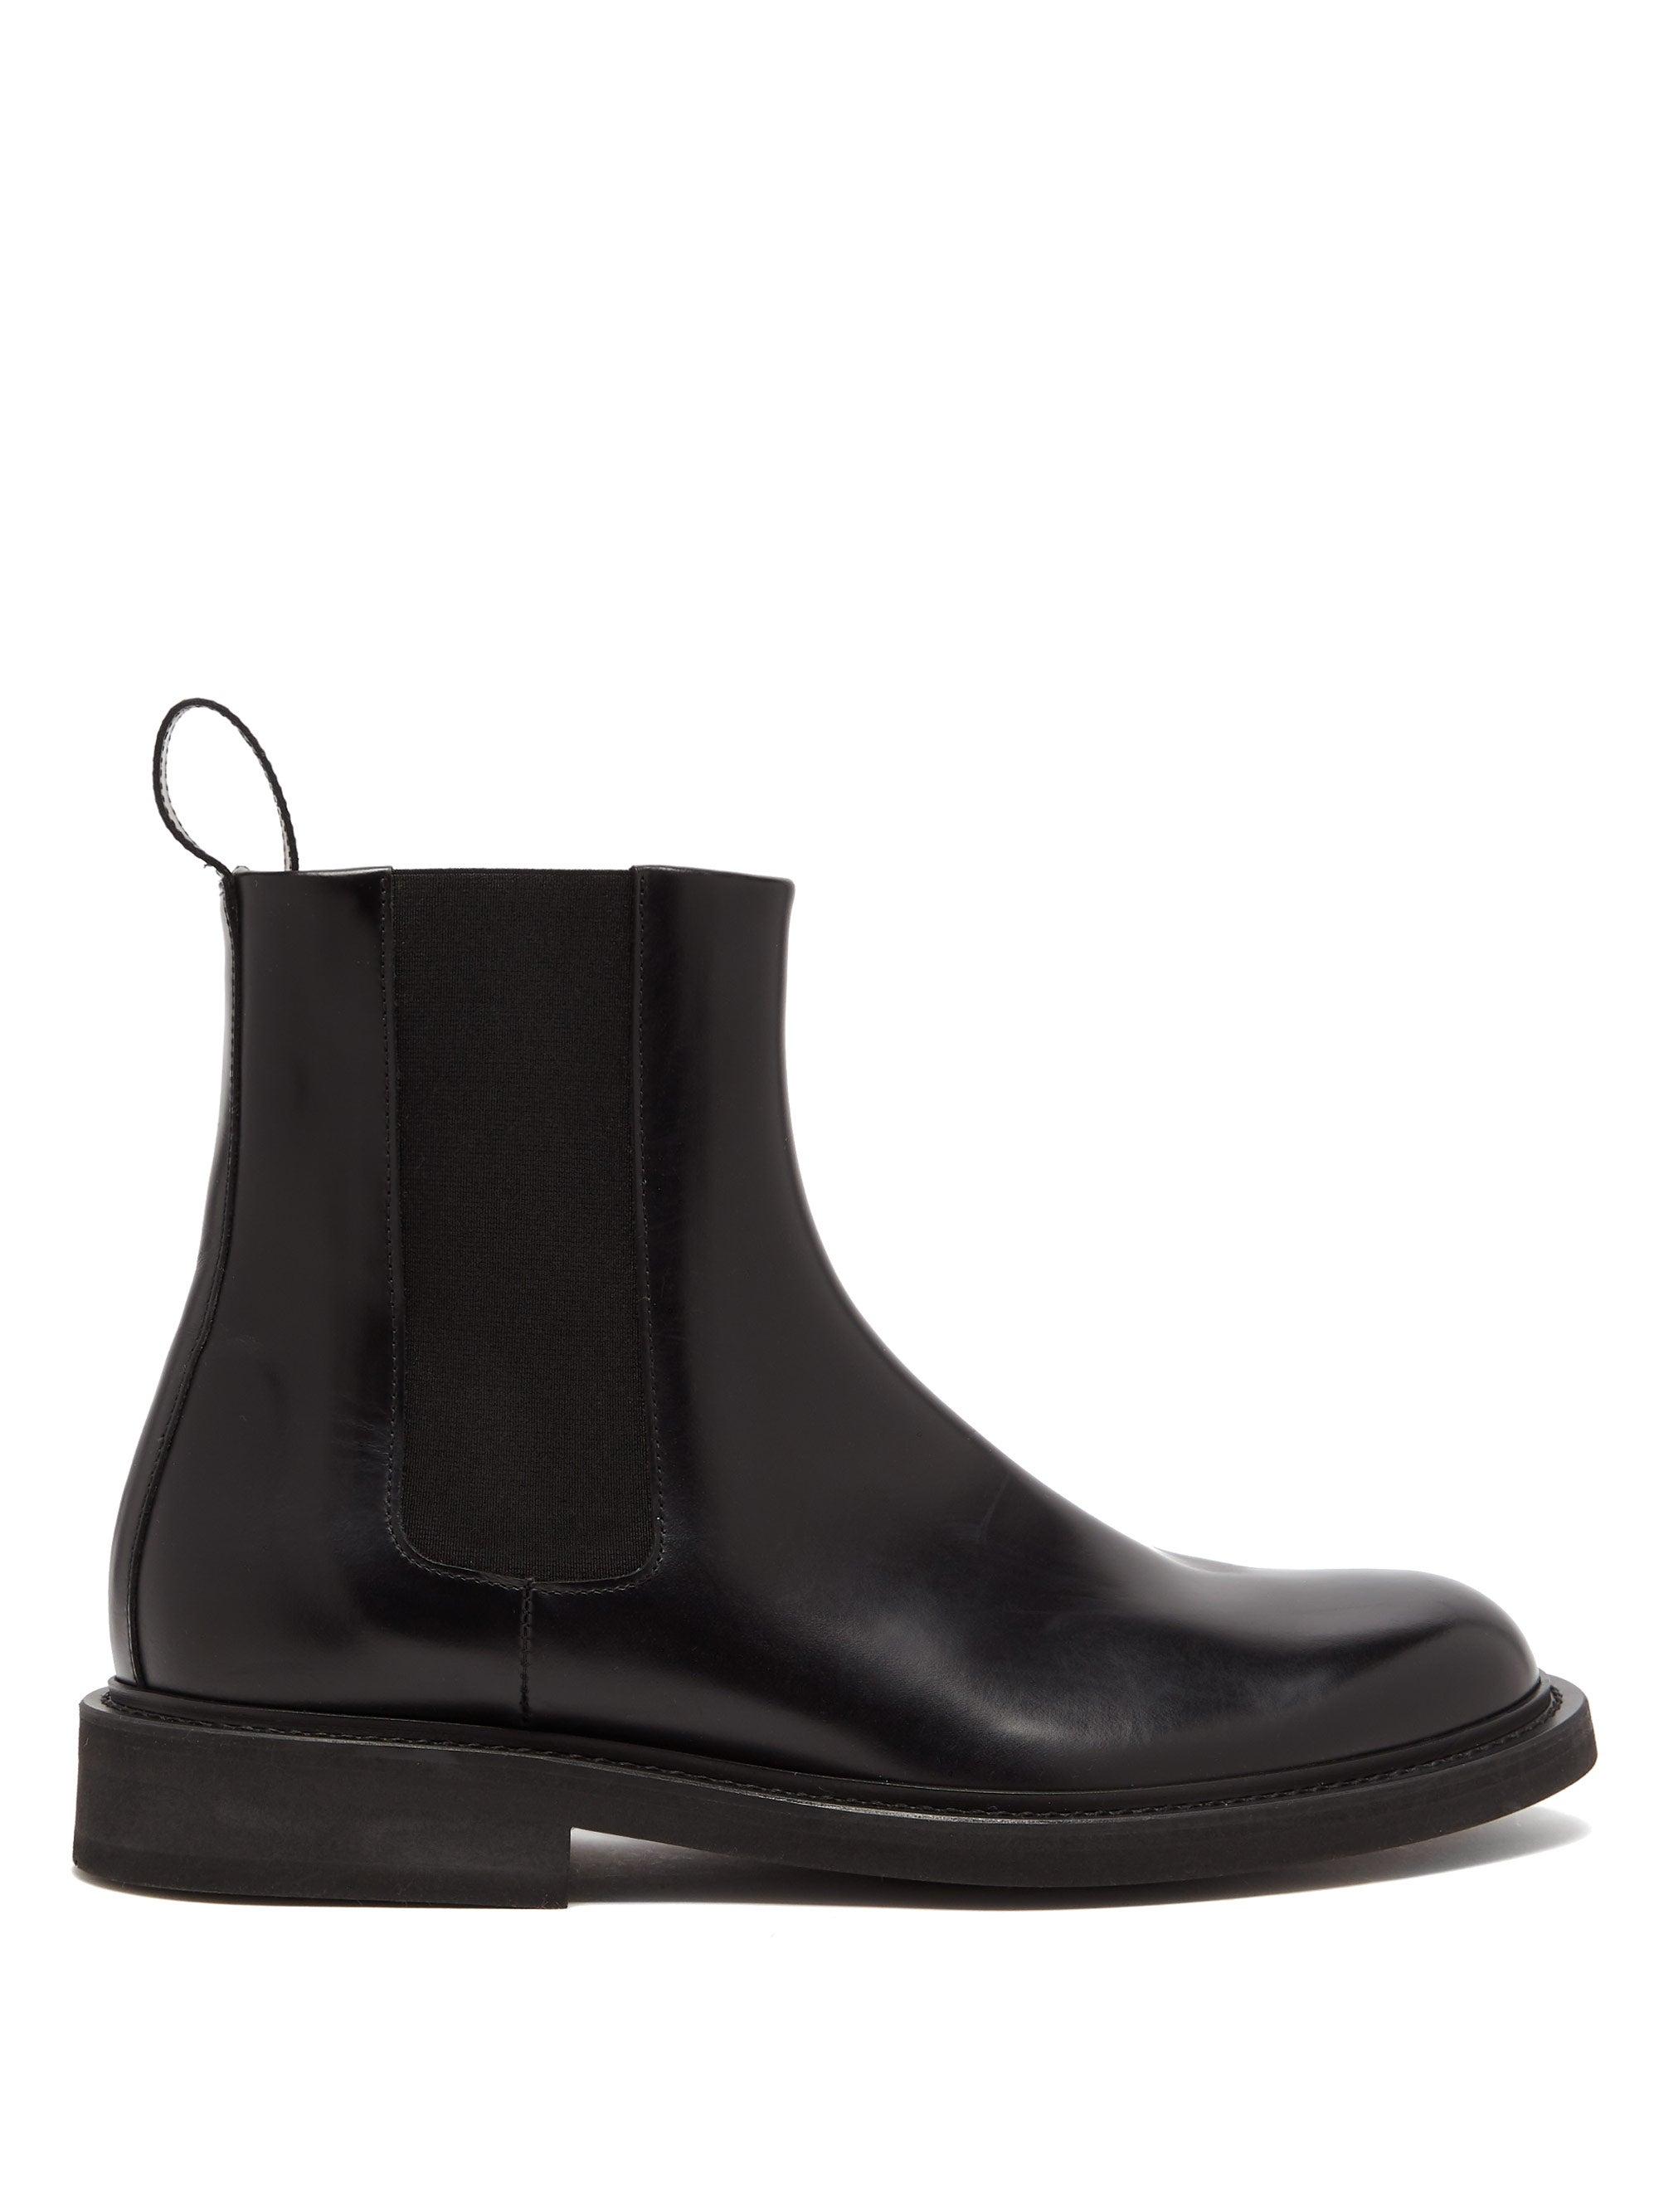 Bottega Veneta Leather Chelsea Boots in Black for Men - Lyst